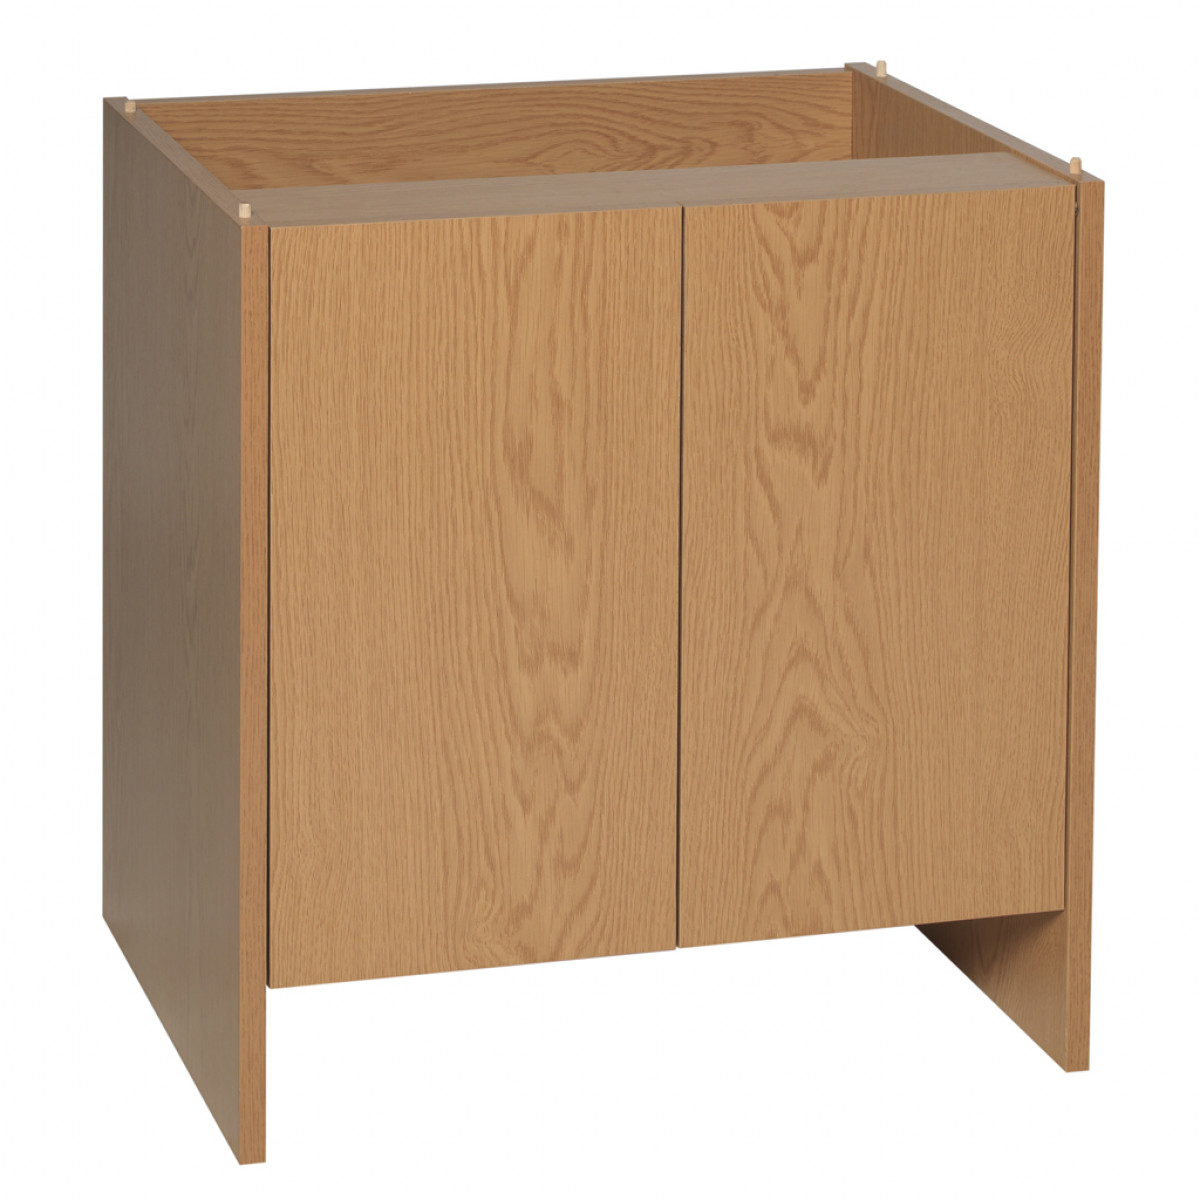 Monkfield 3ft Vivarium Cabinet Only - Oak (L91 x D46 x H66cm)